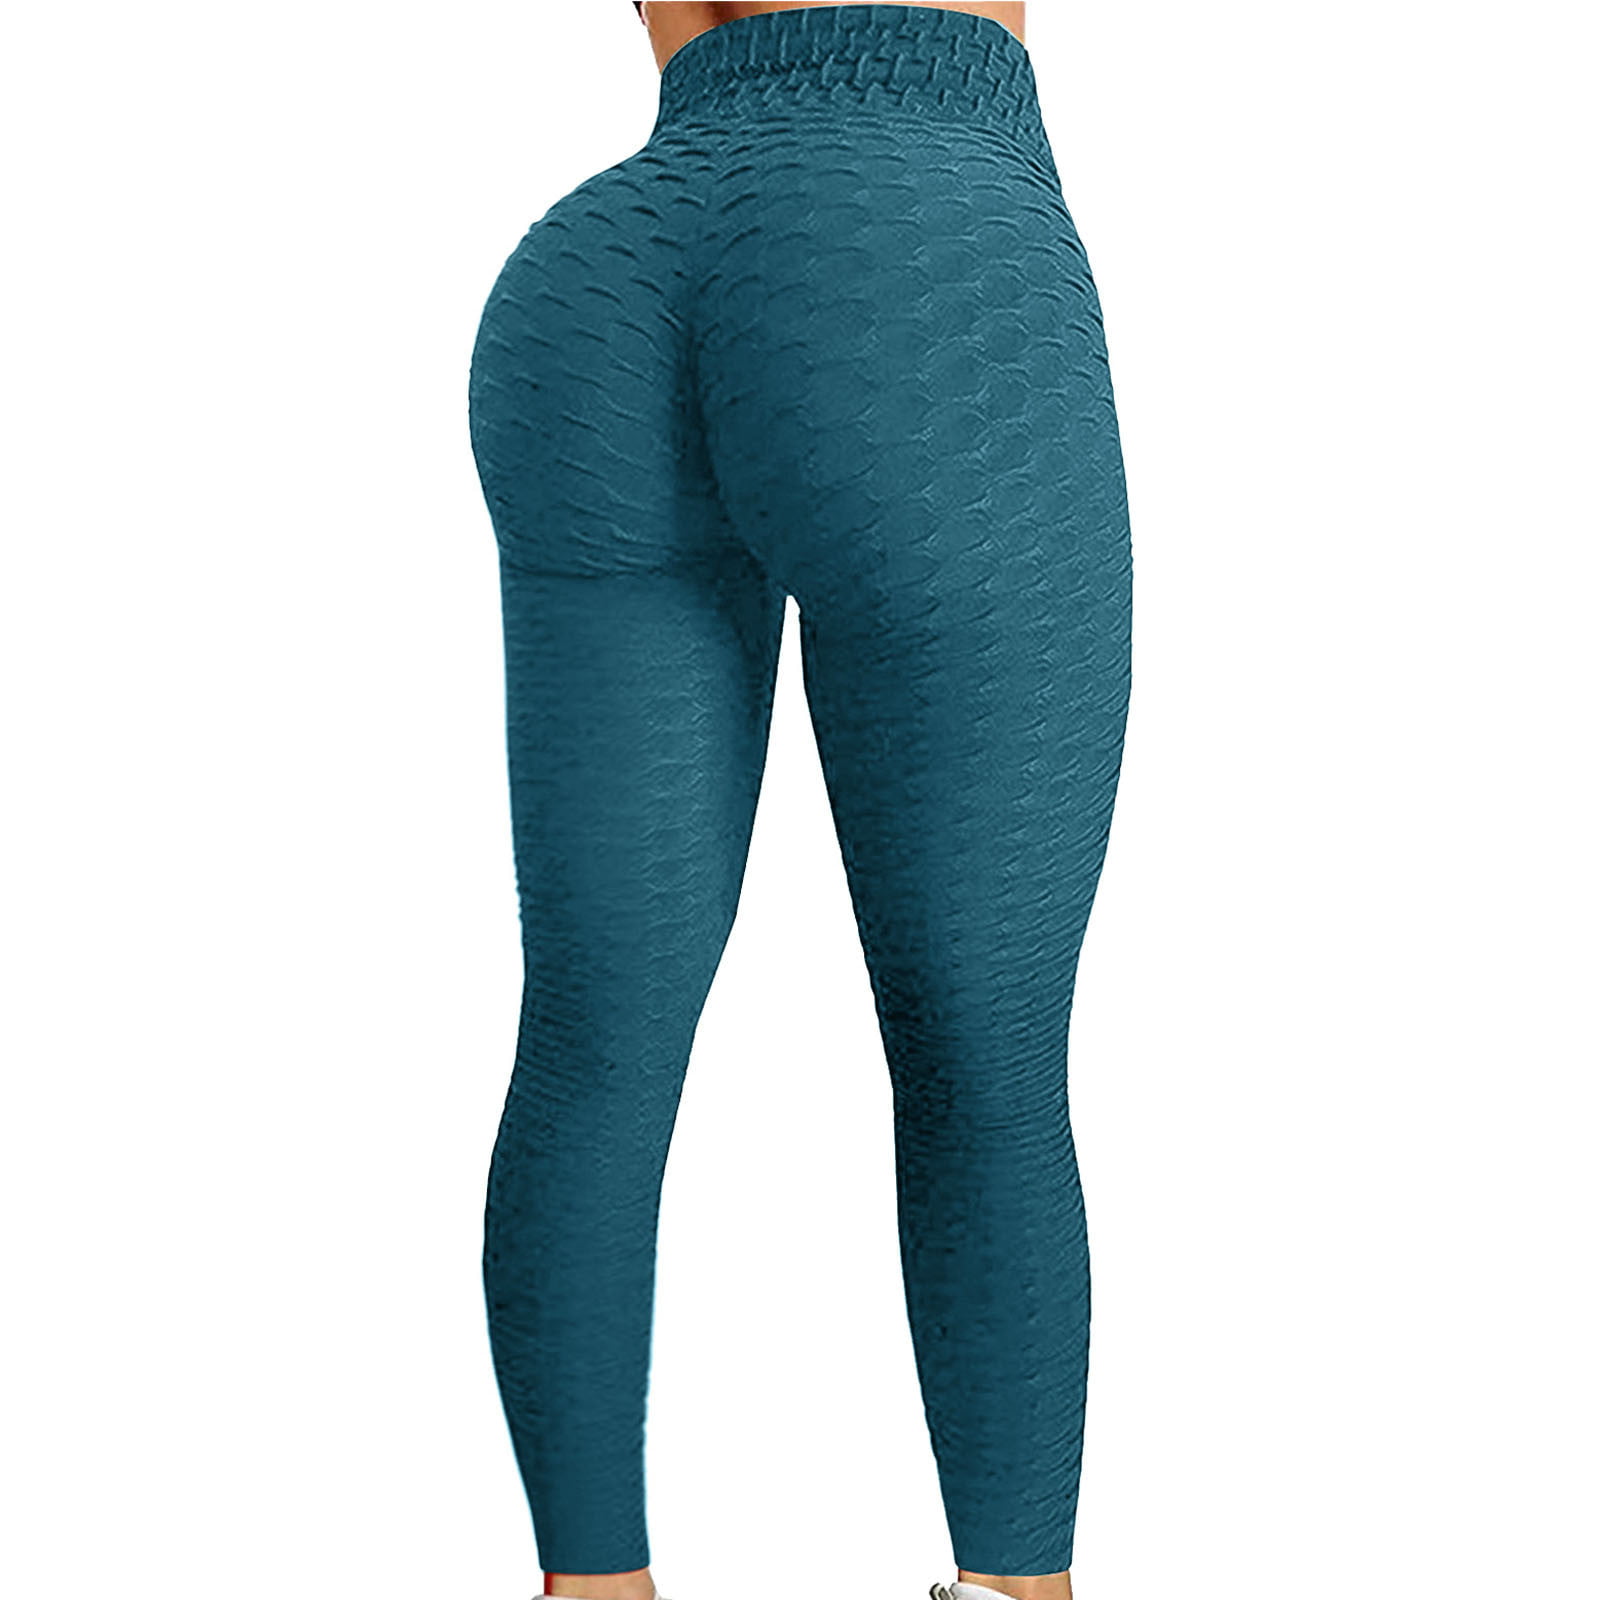 Gubotare Leggings For Women Women's Yoga Running Pants Printed